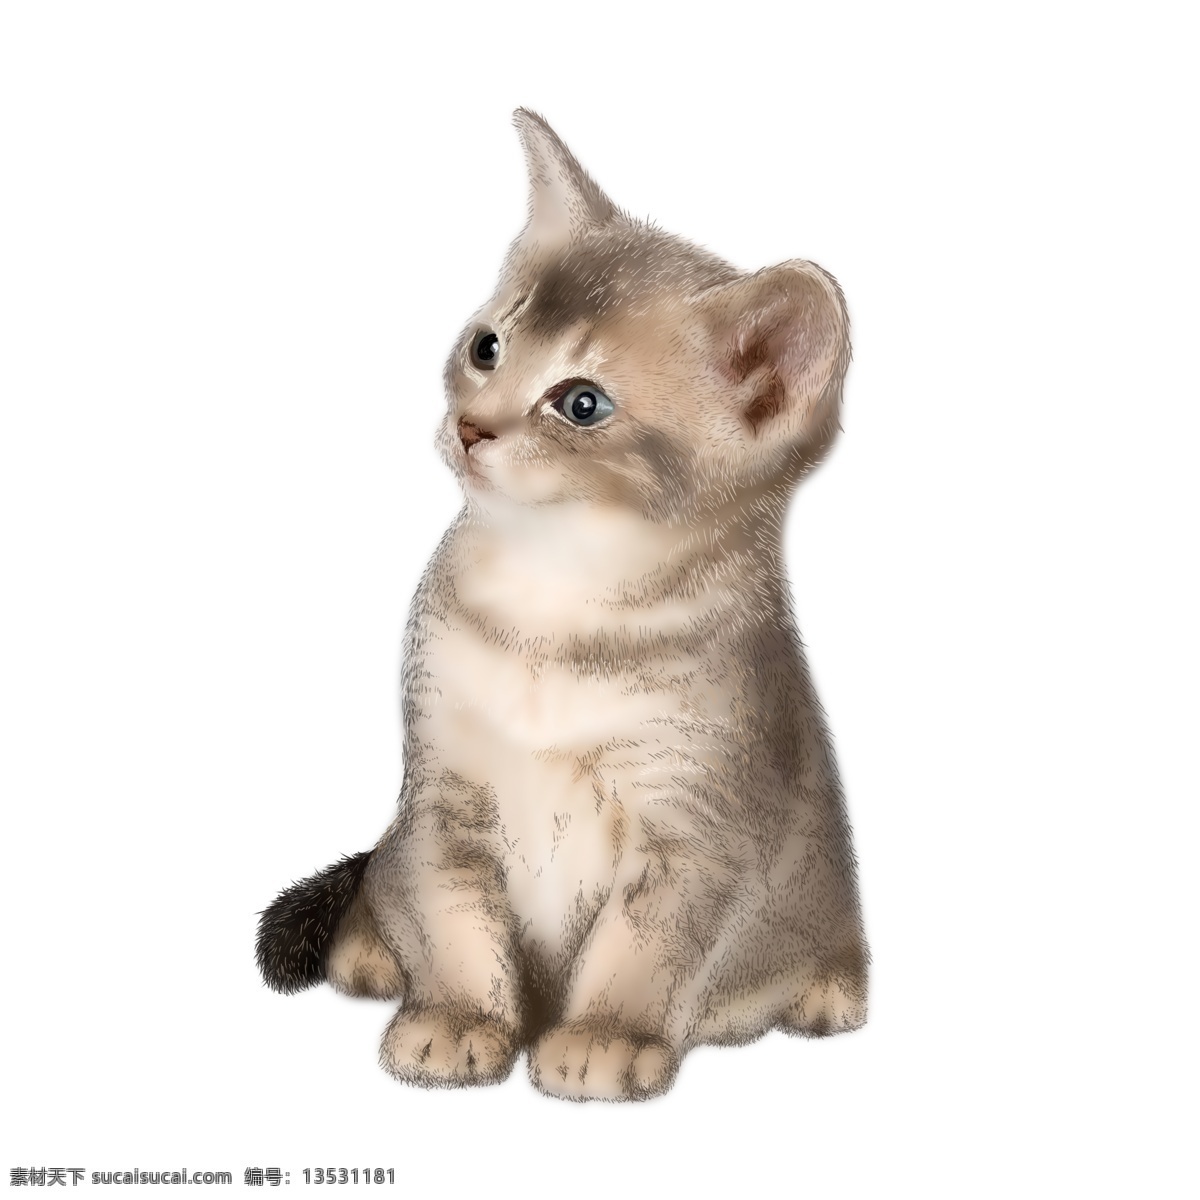 可爱 仿真 小 猫咪 一只小猫咪 可爱的 小动物 手绘原创 萌宠 宠物 免抠图